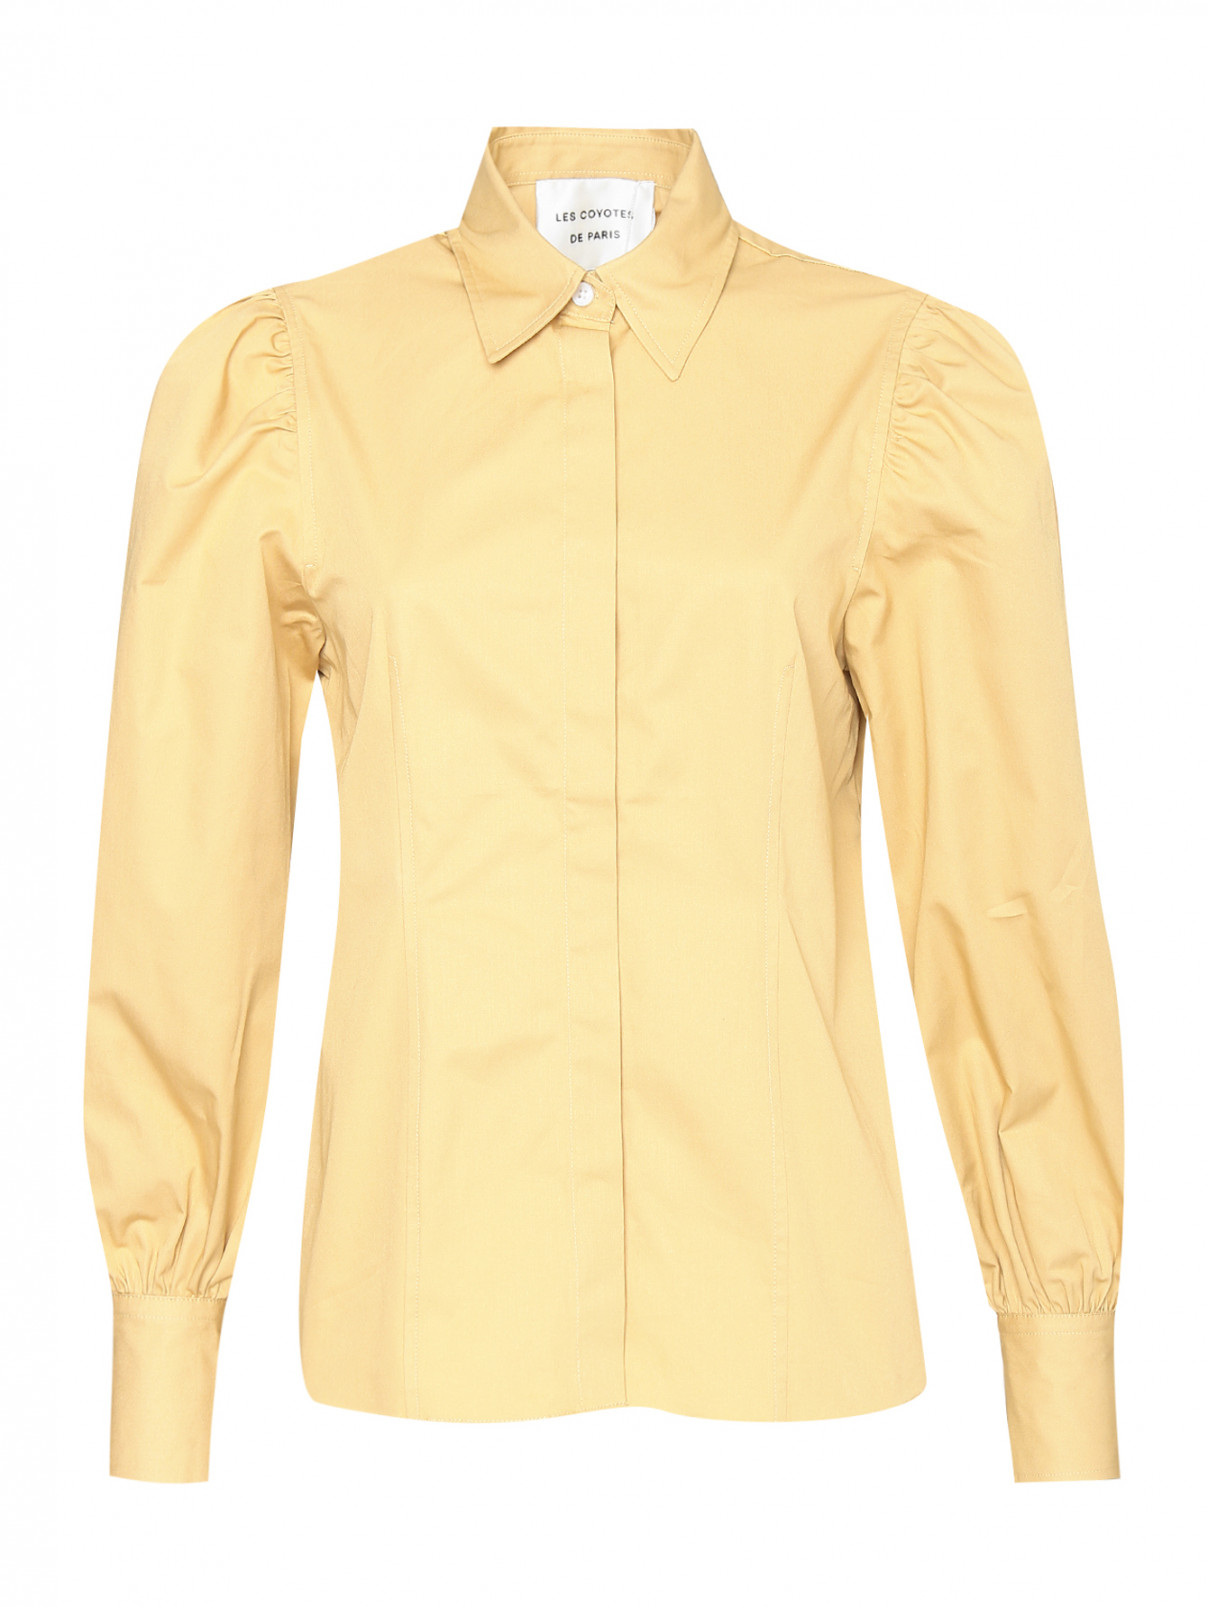 Блуза из хлопка с объемными рукавами Les Coyotes de Paris  –  Общий вид  – Цвет:  Оранжевый